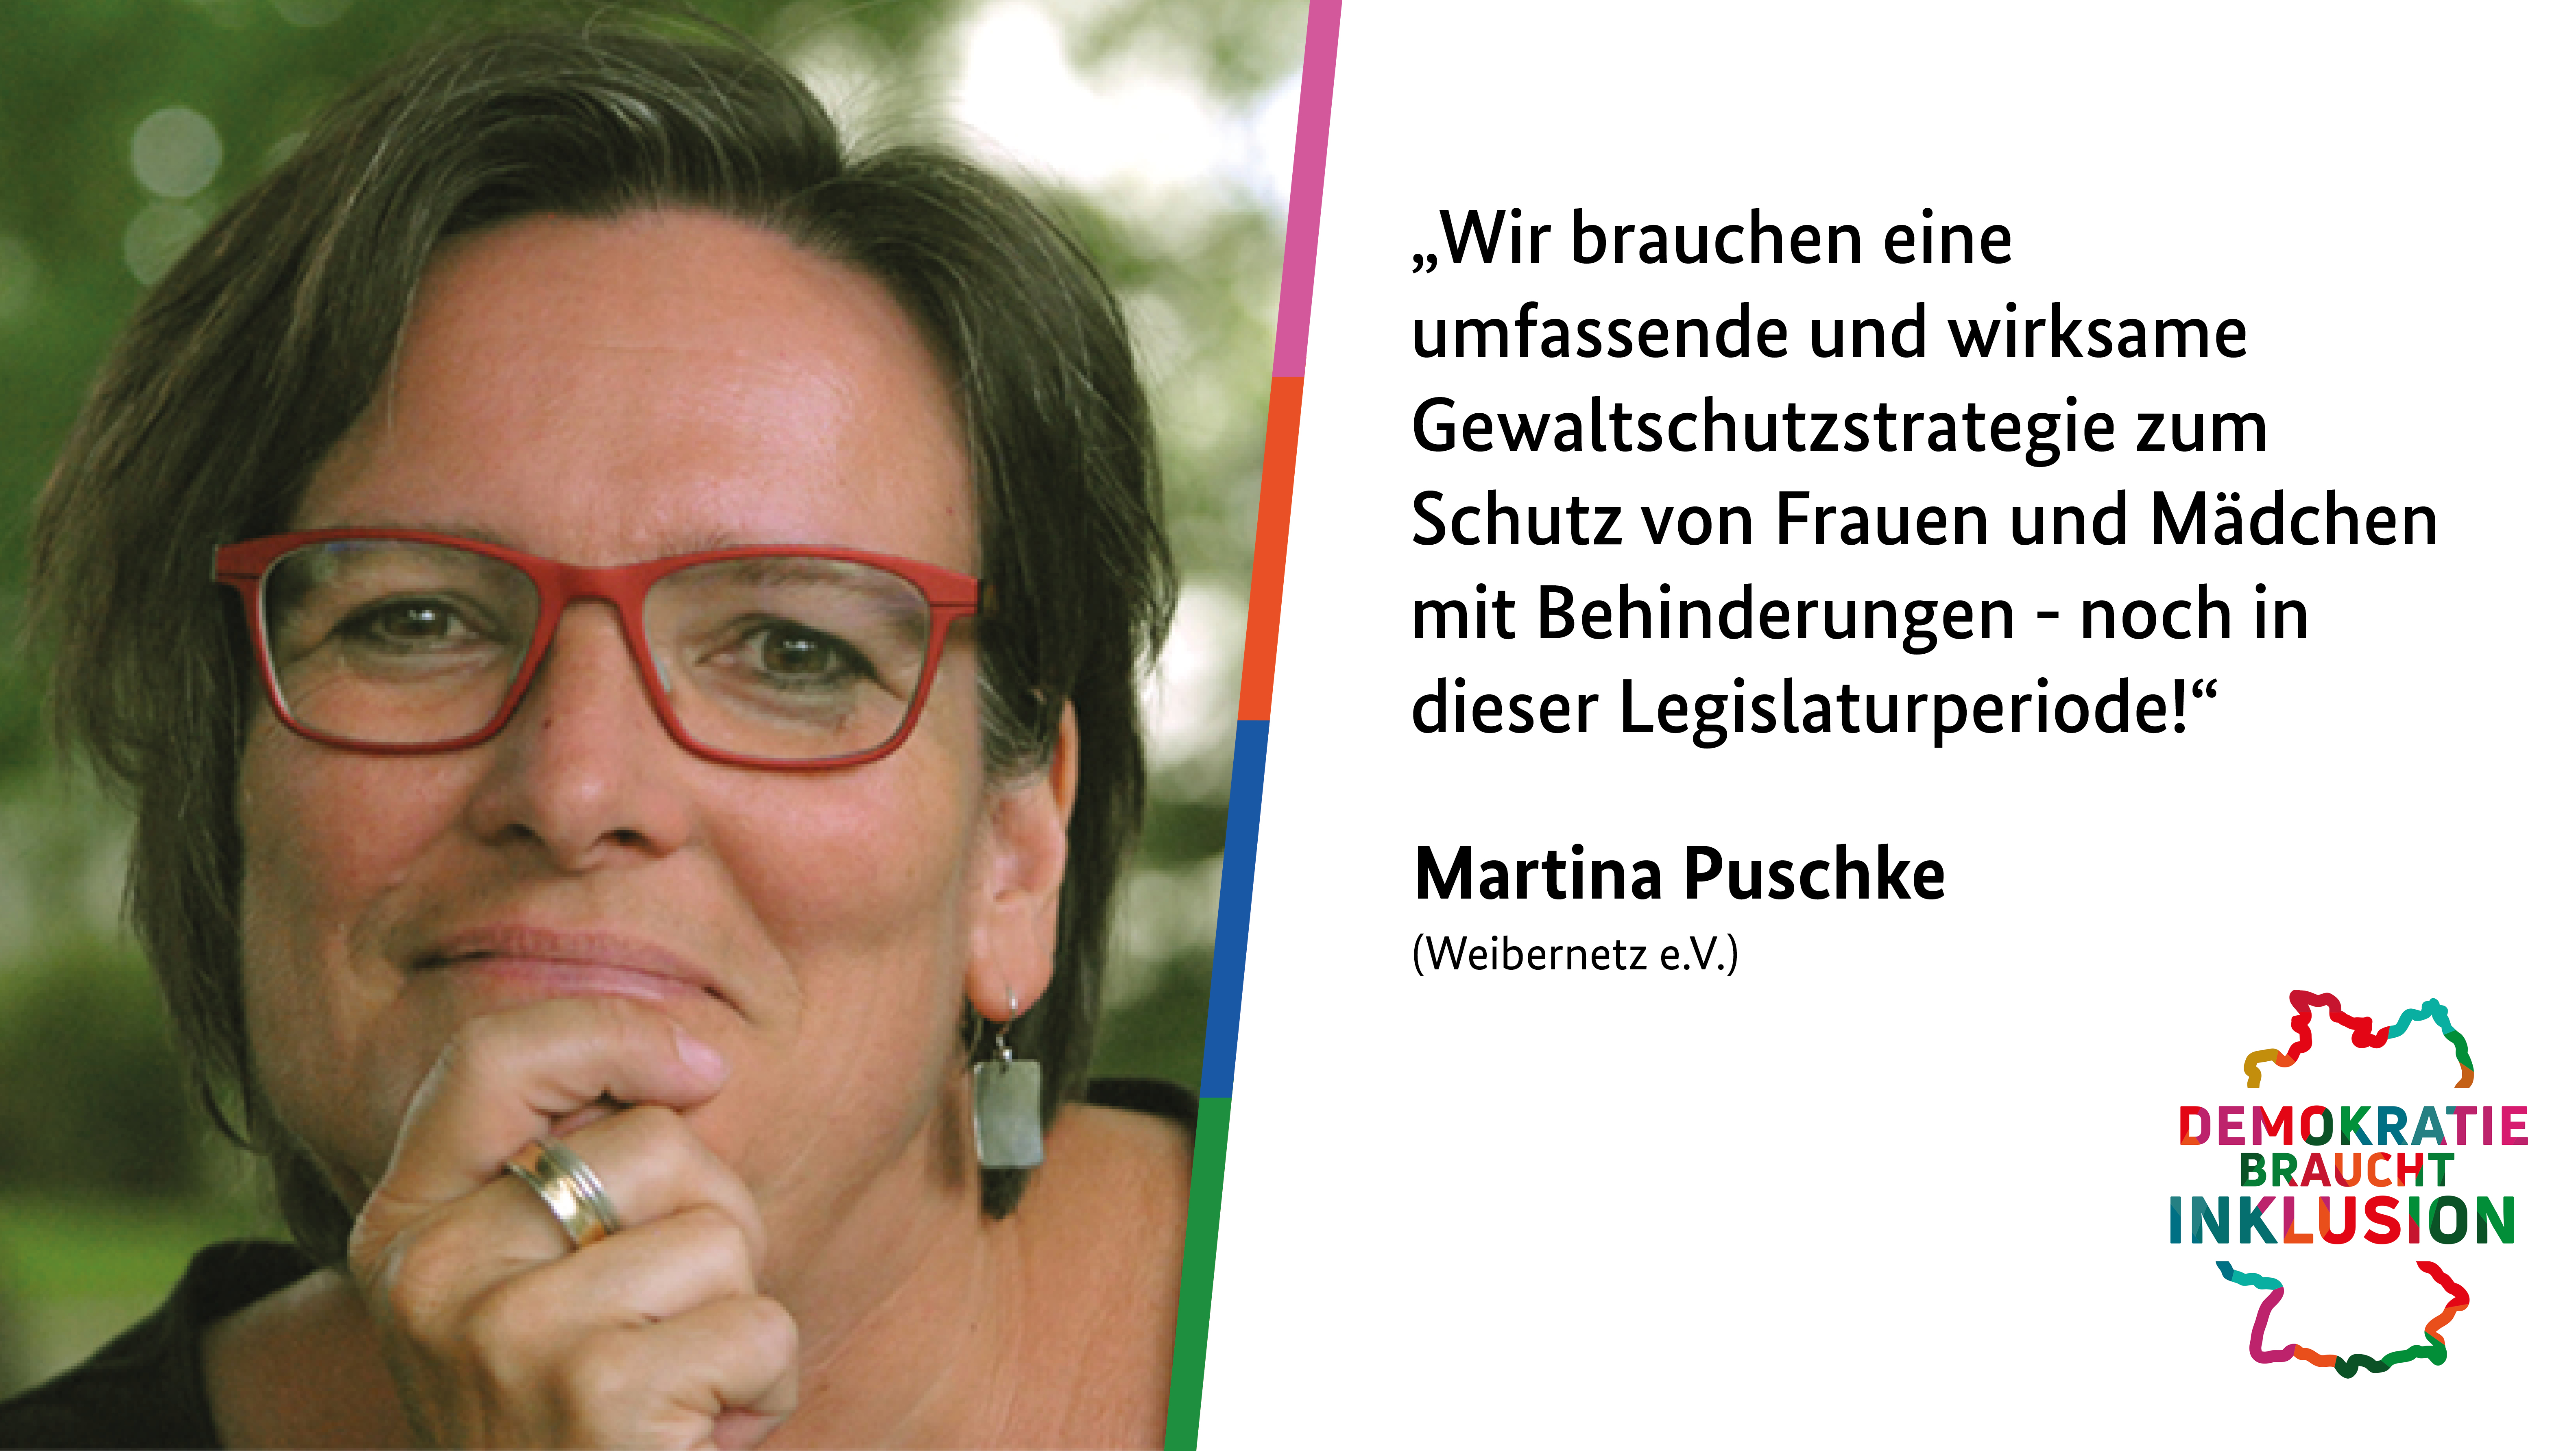 Bild-Text-Kachel: Links ein Bild von Martina Puschke, rechts ein Zitat von ihr: „Wir brauchen eine umfassende und wirksame Gewaltschutzstrategie zum Schutz von Frauen und Mädchen mit Behinderungen - noch in dieser Legislaturperiode!“